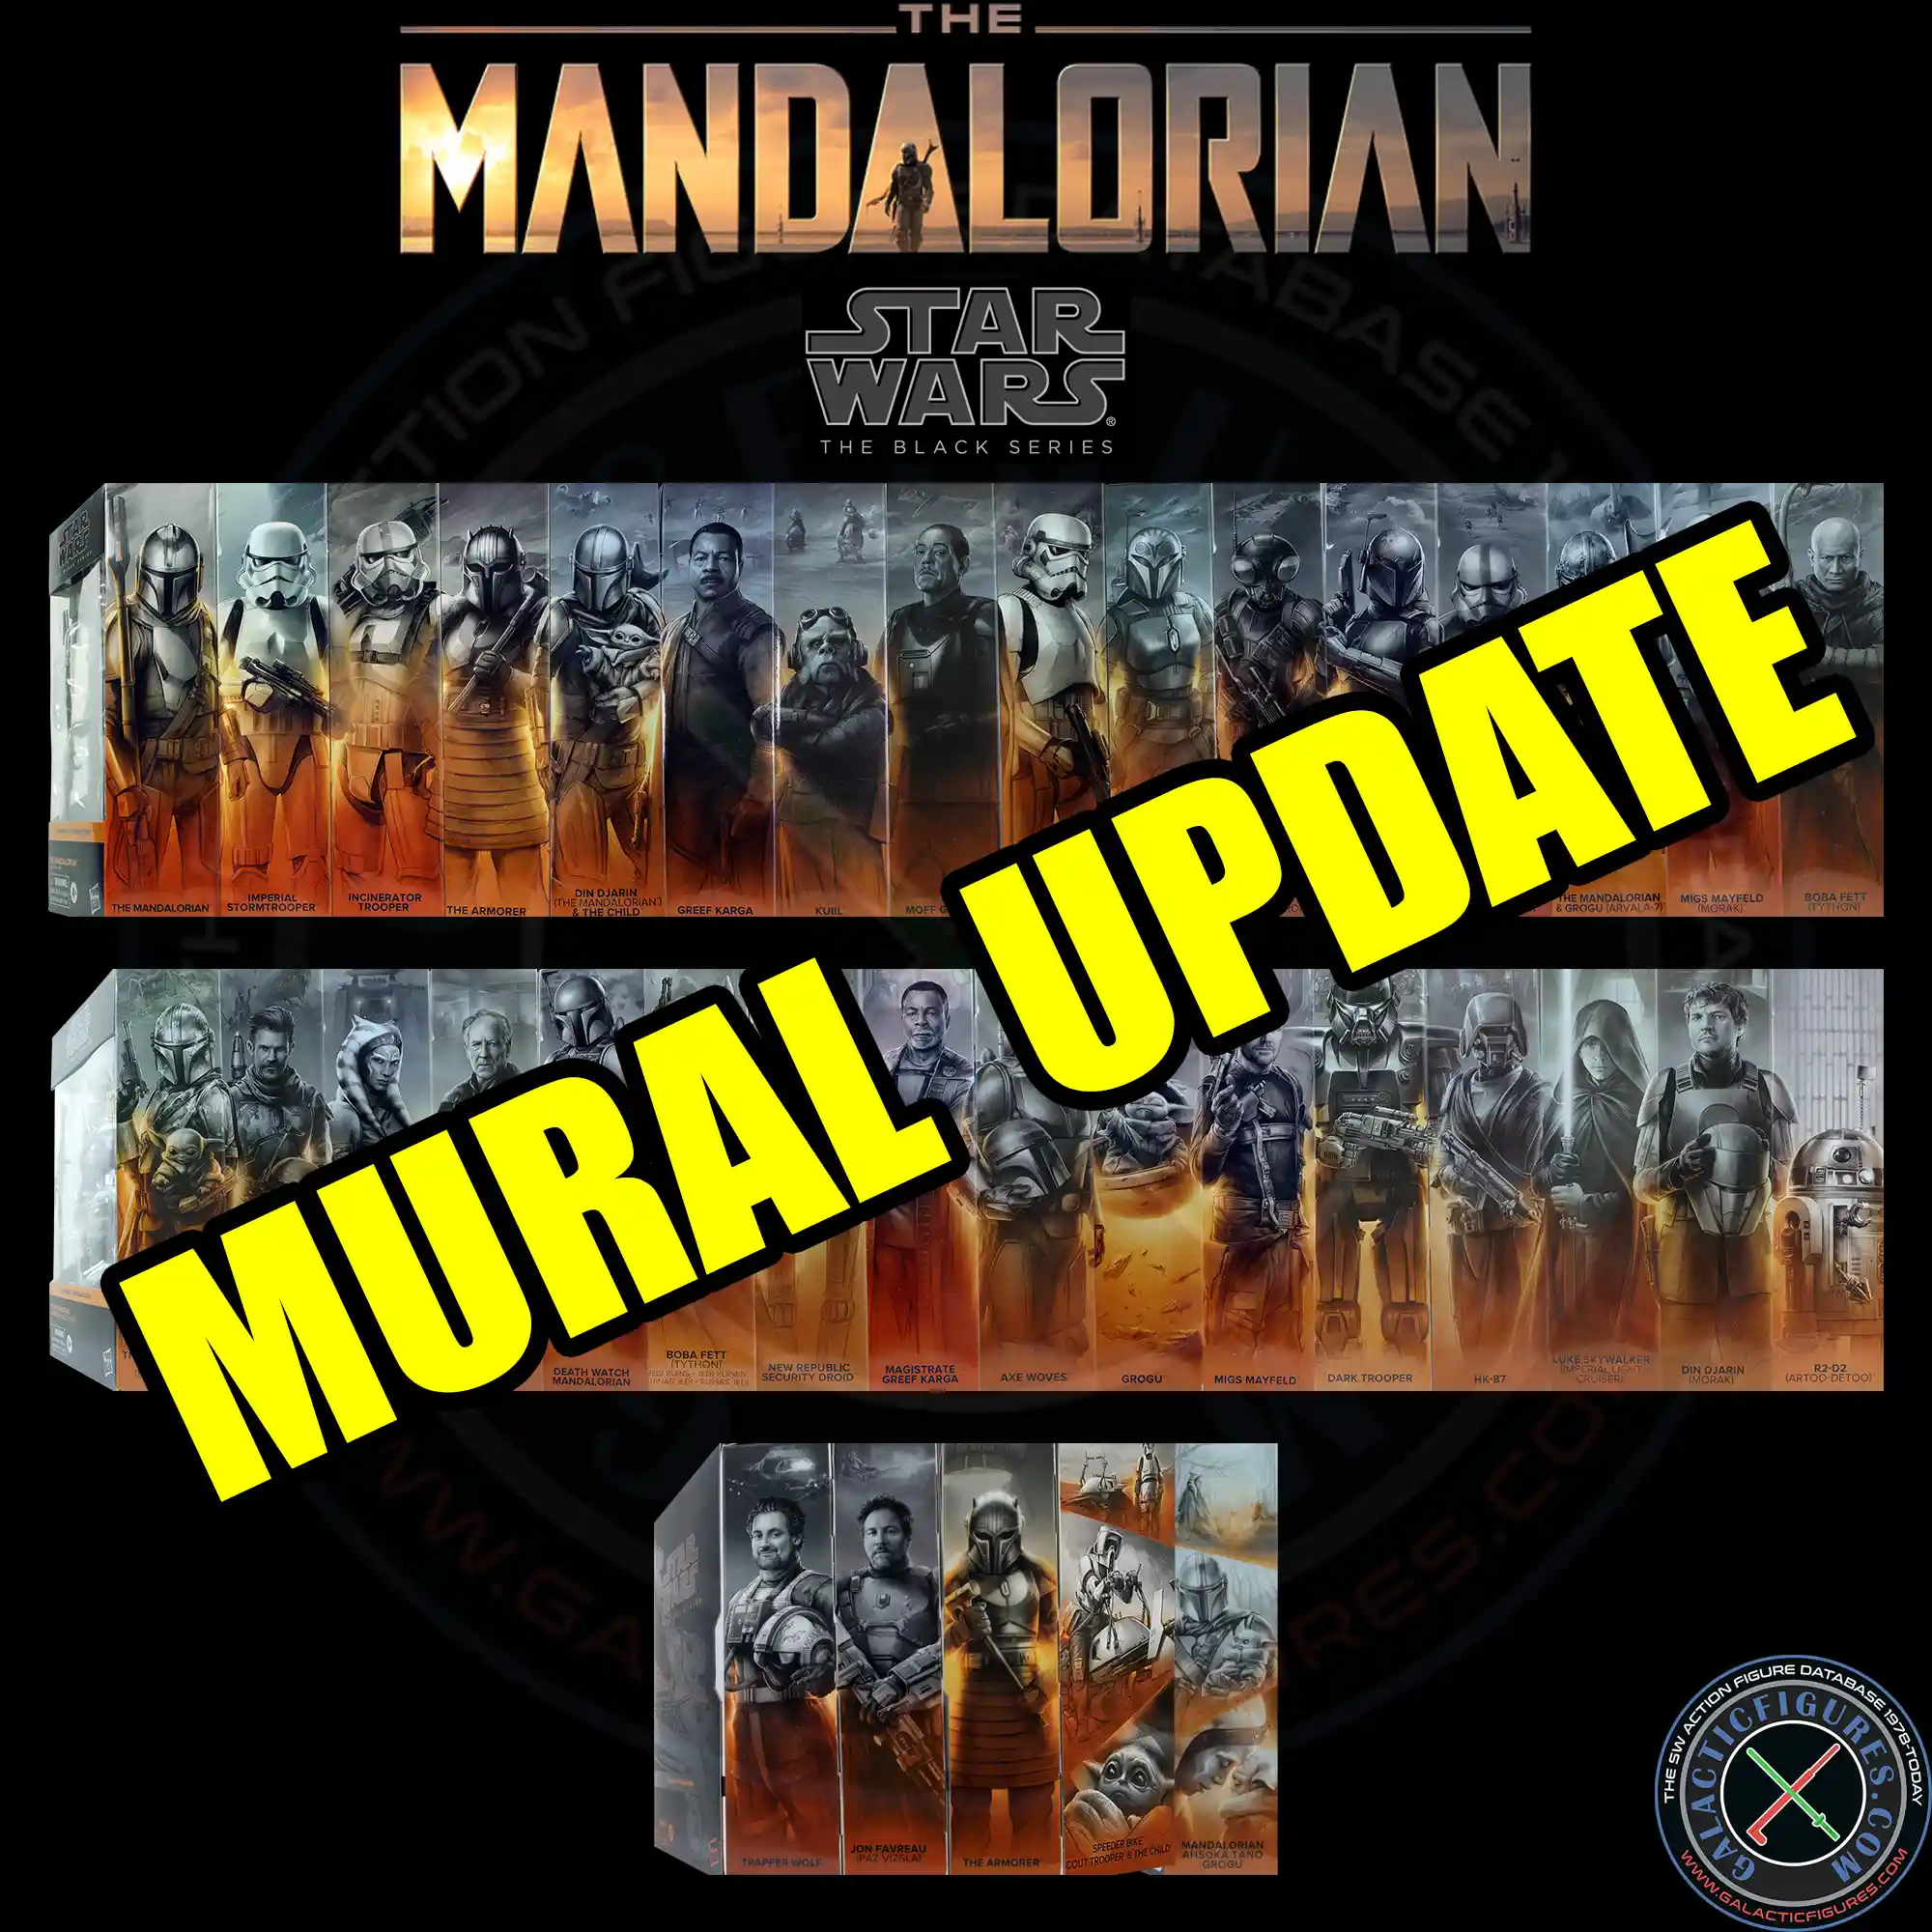 Black Series Mandalorian Mural Update